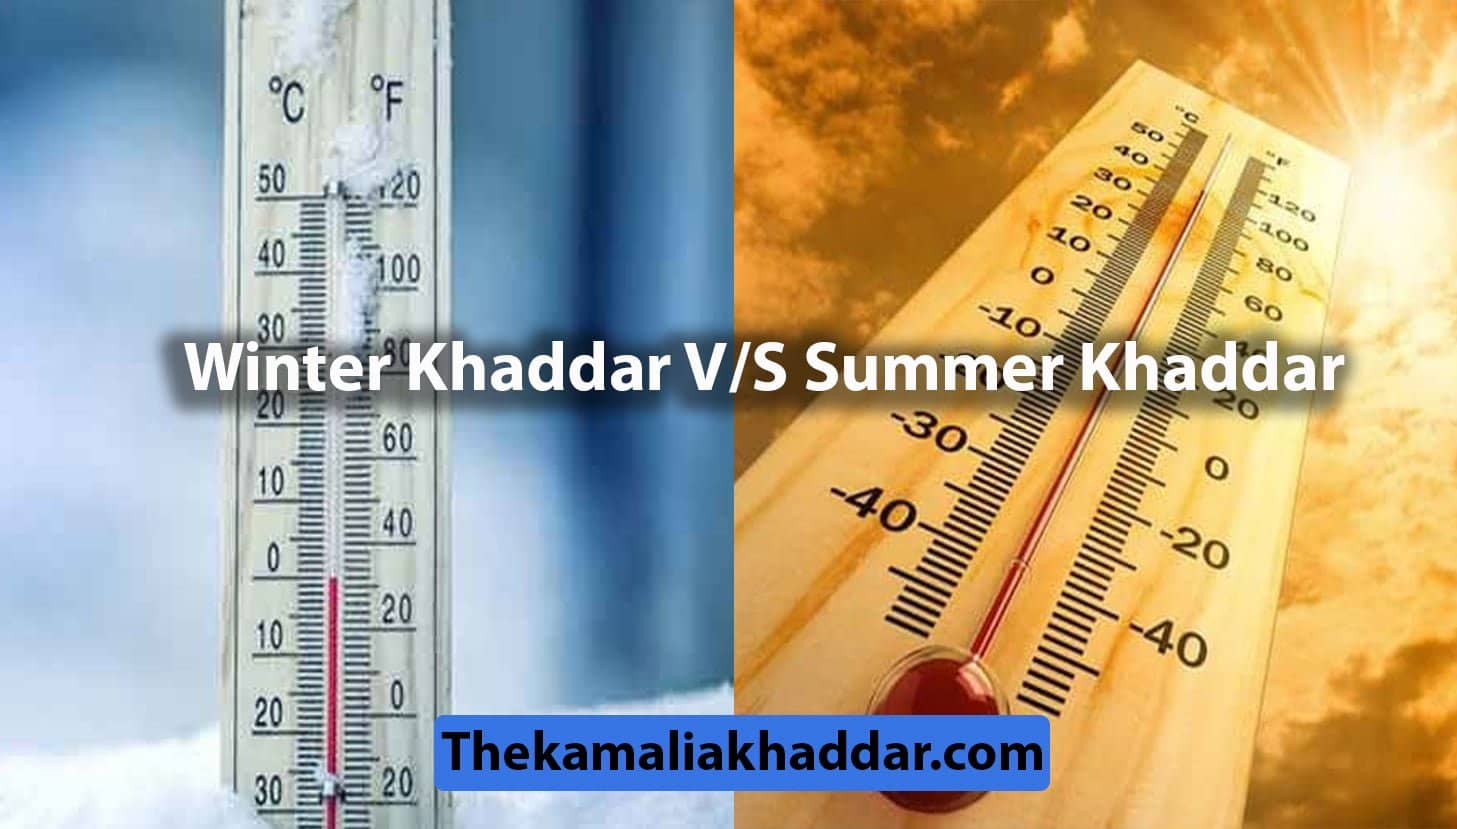 winter v/s summer khaddar